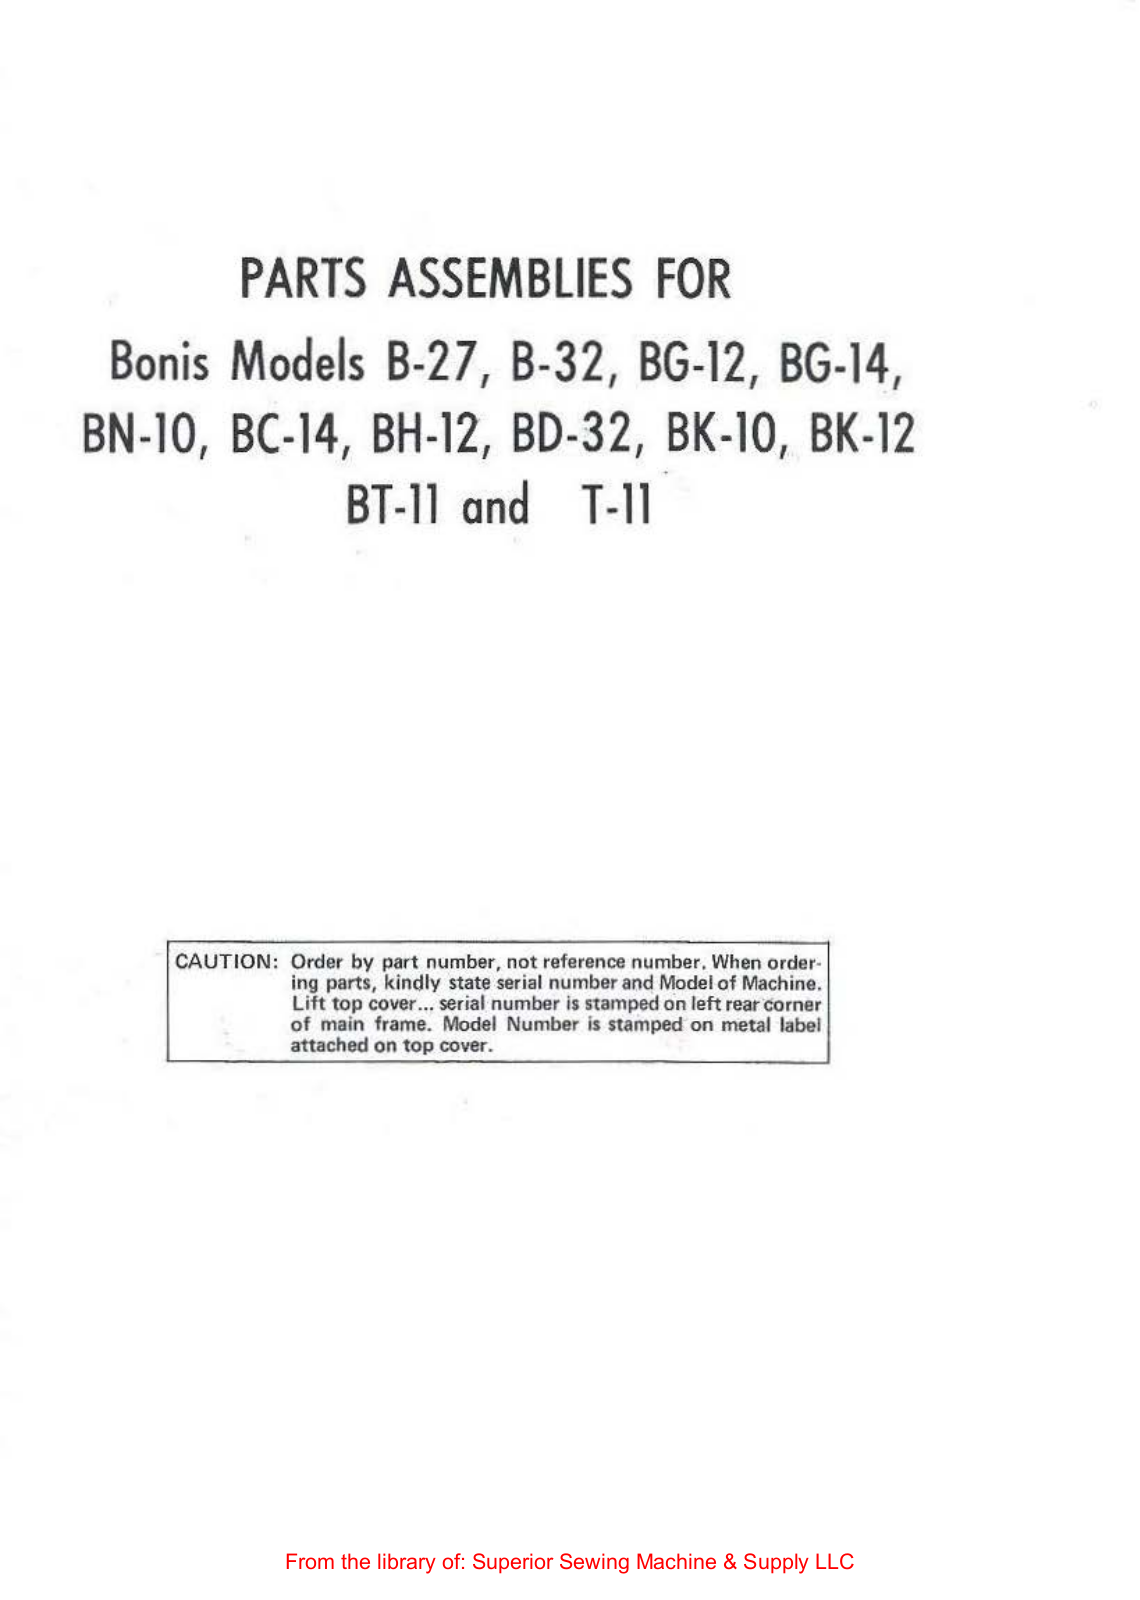 Bonis B-27, B-32, BG-12, BG-14, BN-10 Manual